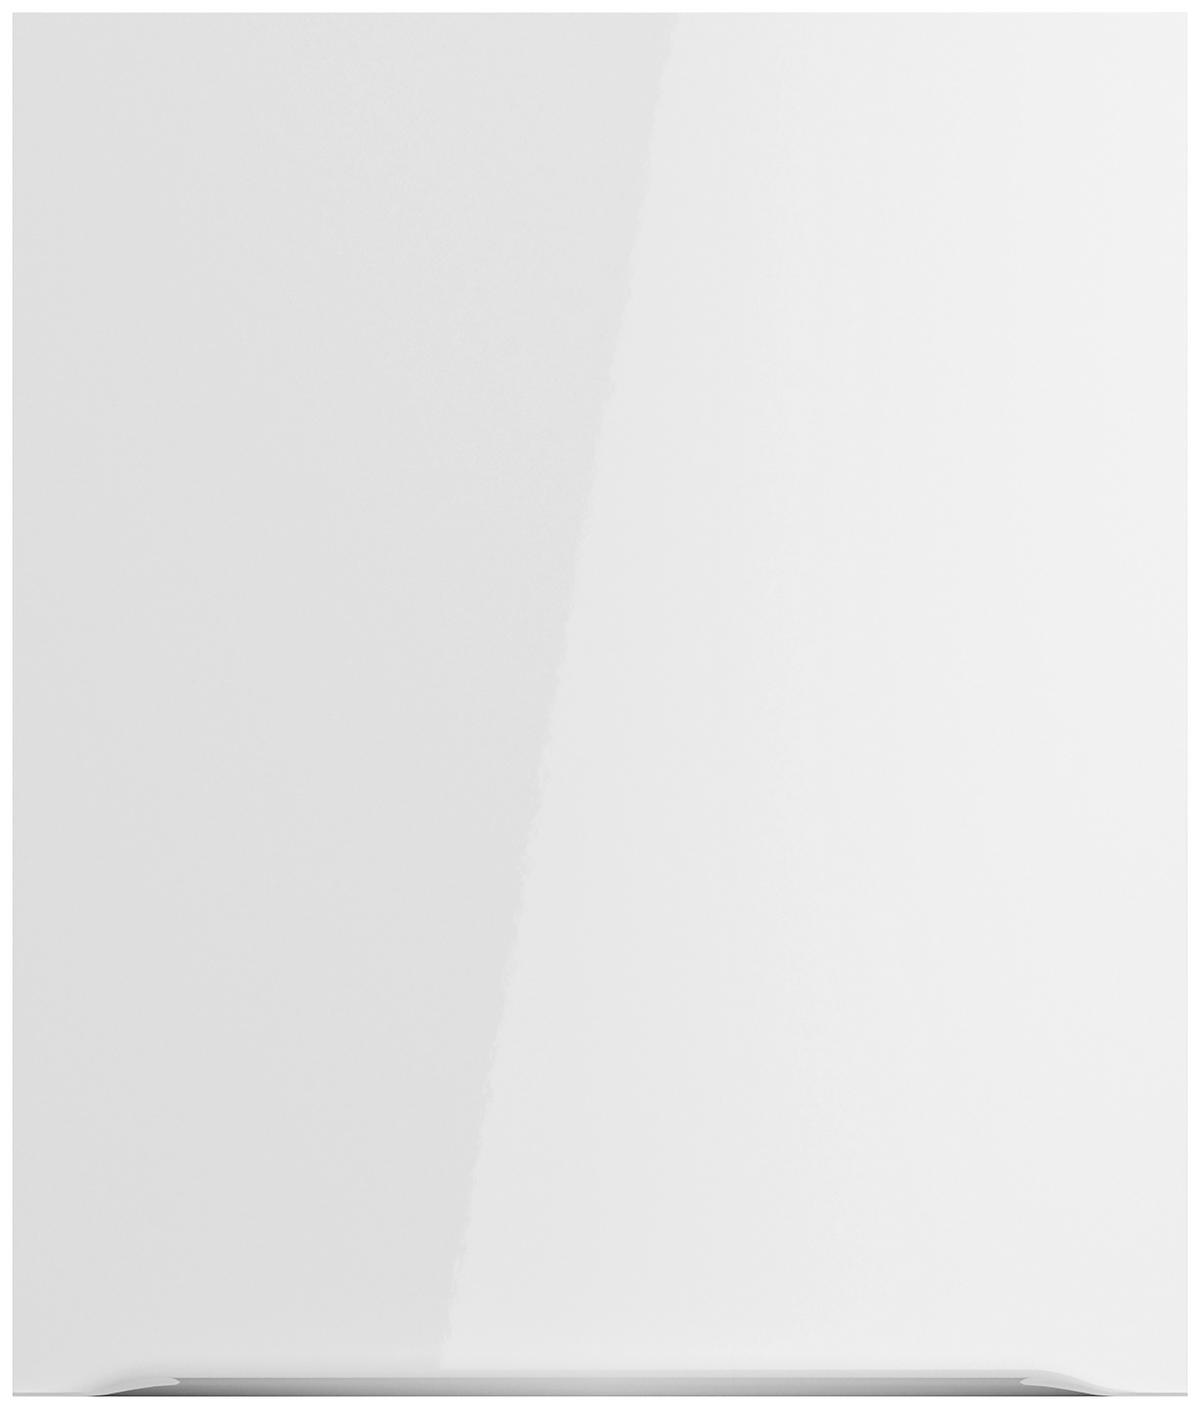 KÜCHENLEERBLOCK 270 cm   in Weiß, Weiß Hochglanz  - Edelstahlfarben/Weiß Hochglanz, Basics, Holzwerkstoff/Metall (270cm) - Optifit